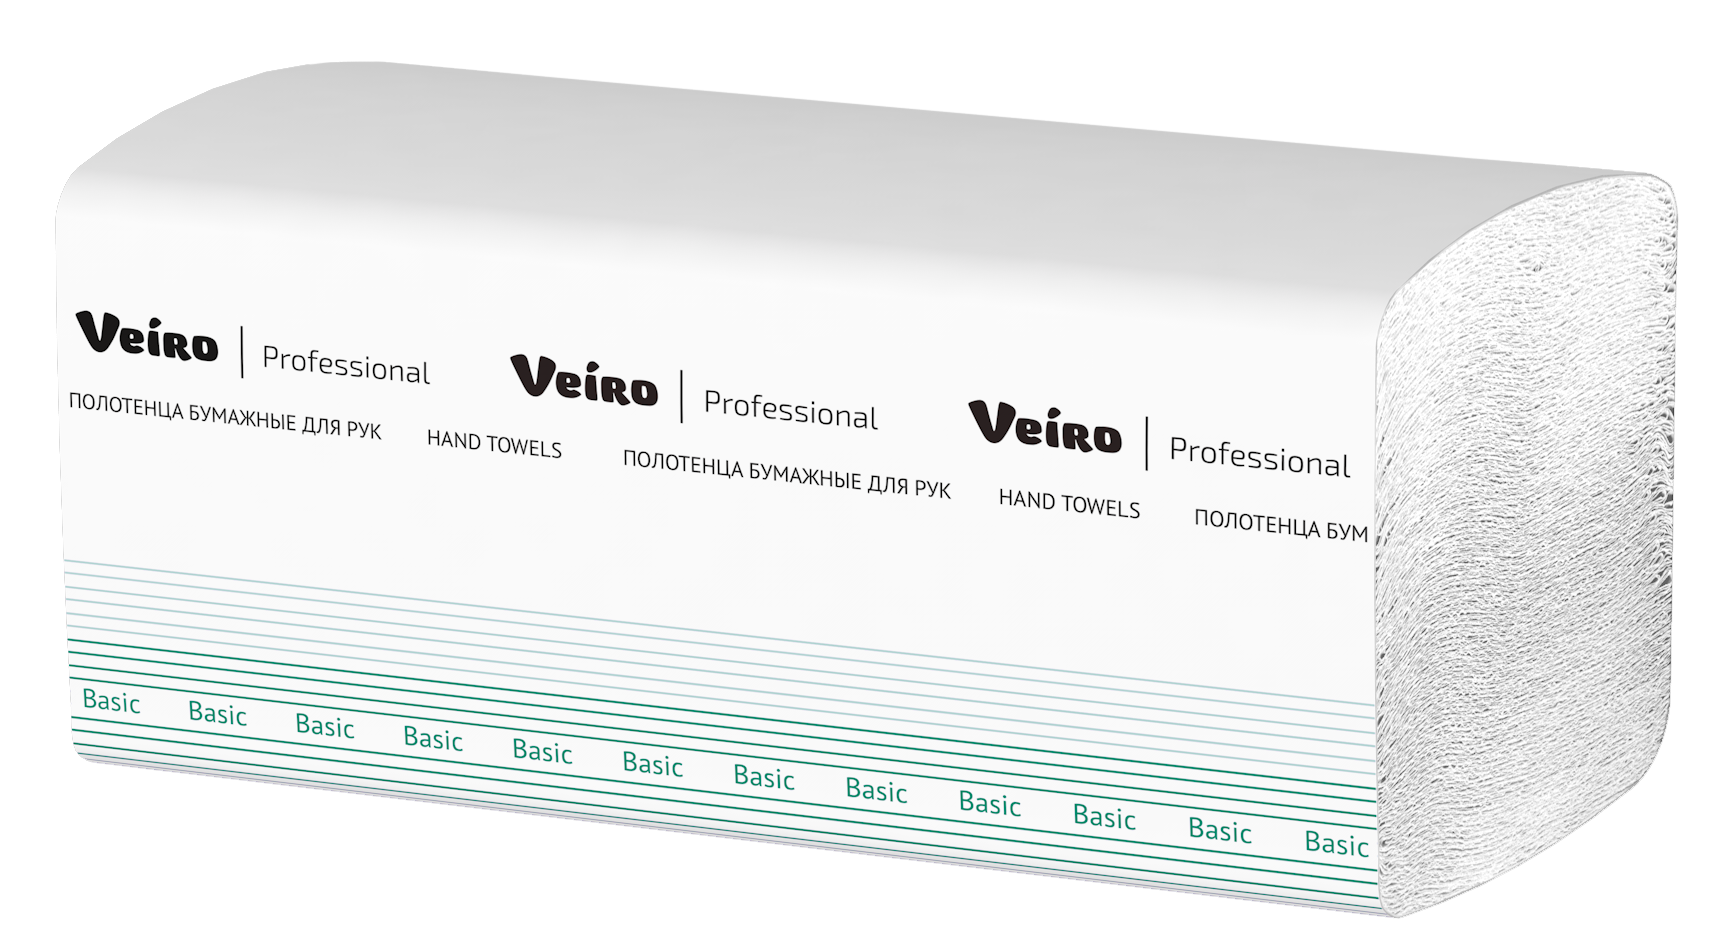 Полотенца Veiro Professional Basic листовые V-сложения белые, 250 л, 1 слой, 15шт/упак